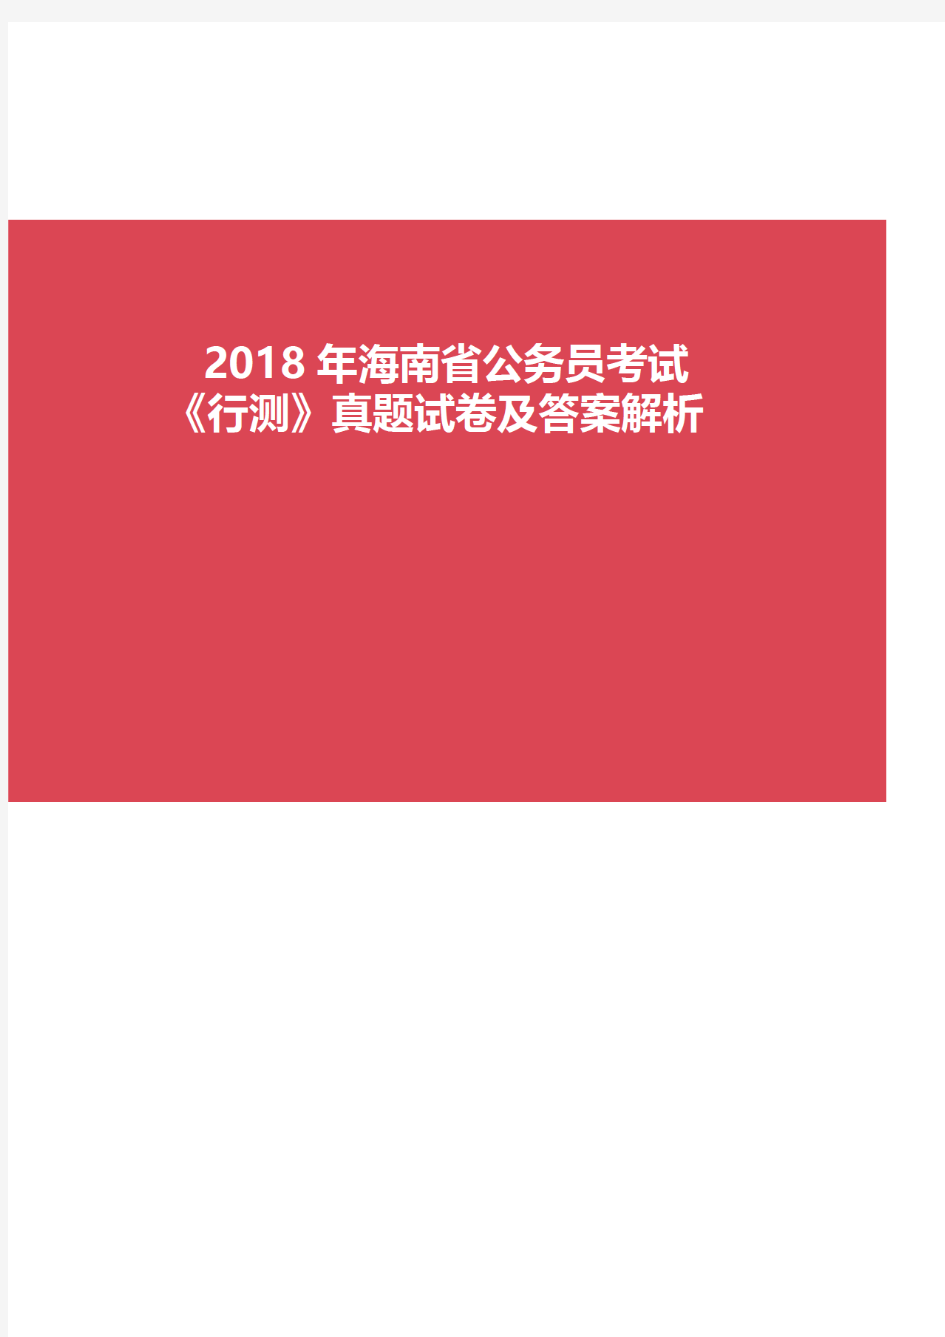 2018年海南省公务员考试《行测》真题试卷及答案解析